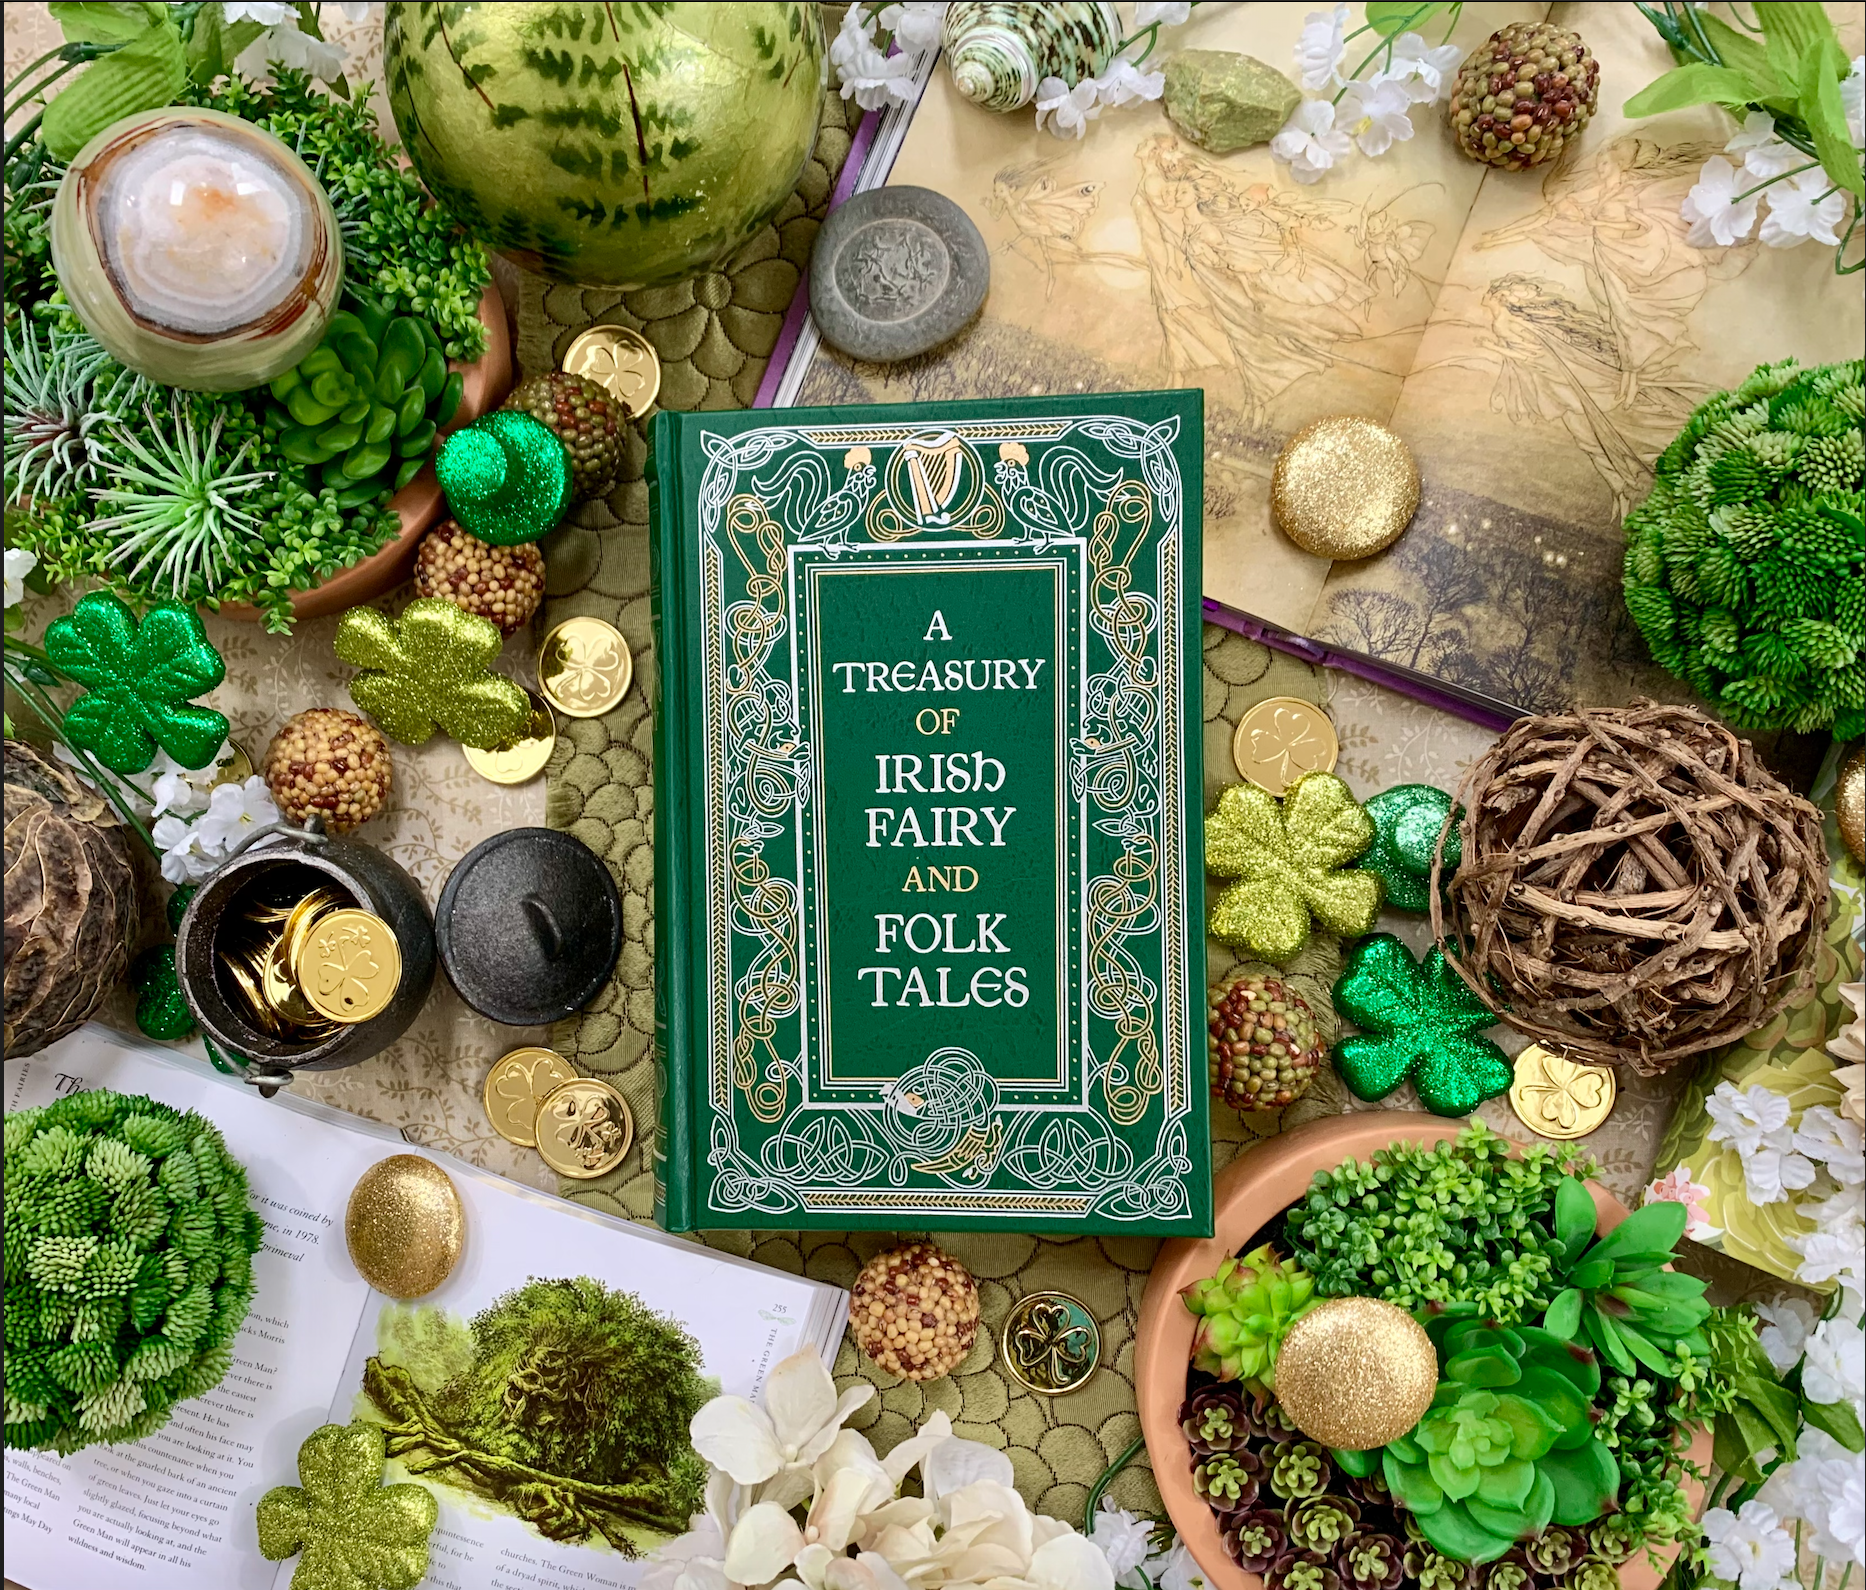 A Treasury of Irish Fairy and Folk Tales